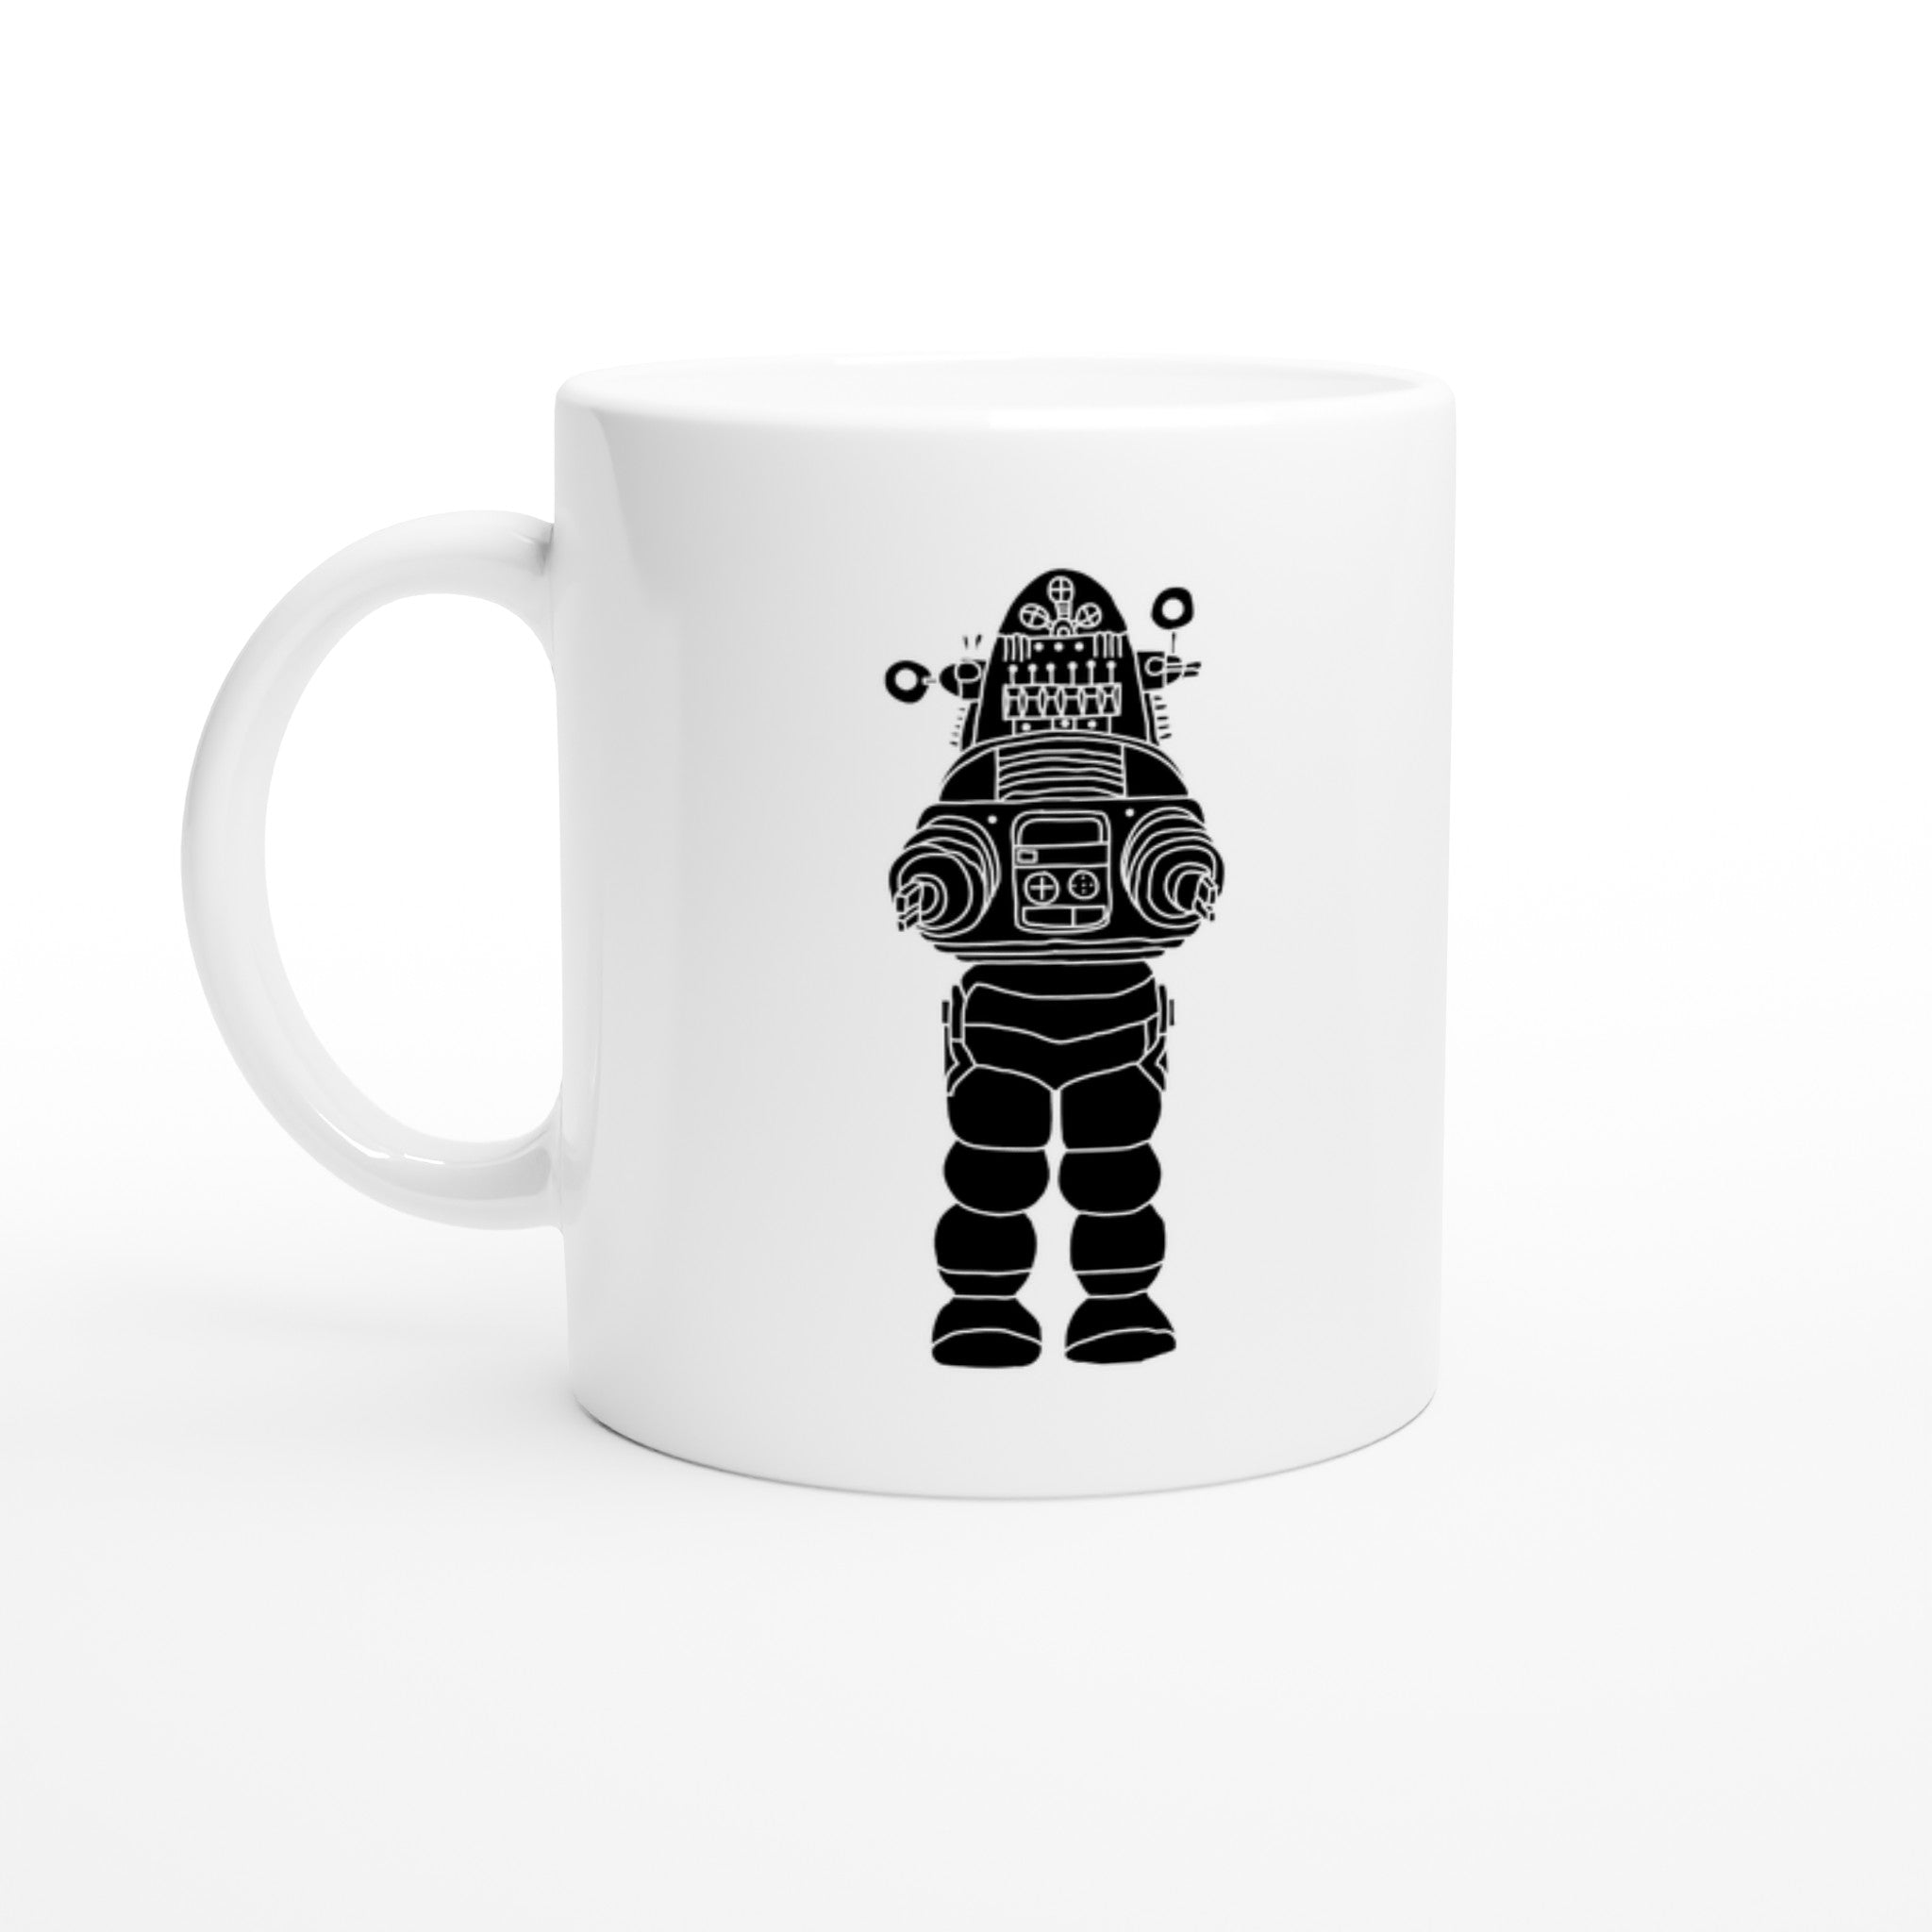 ROBOT UPRISING Mug - Optimalprint